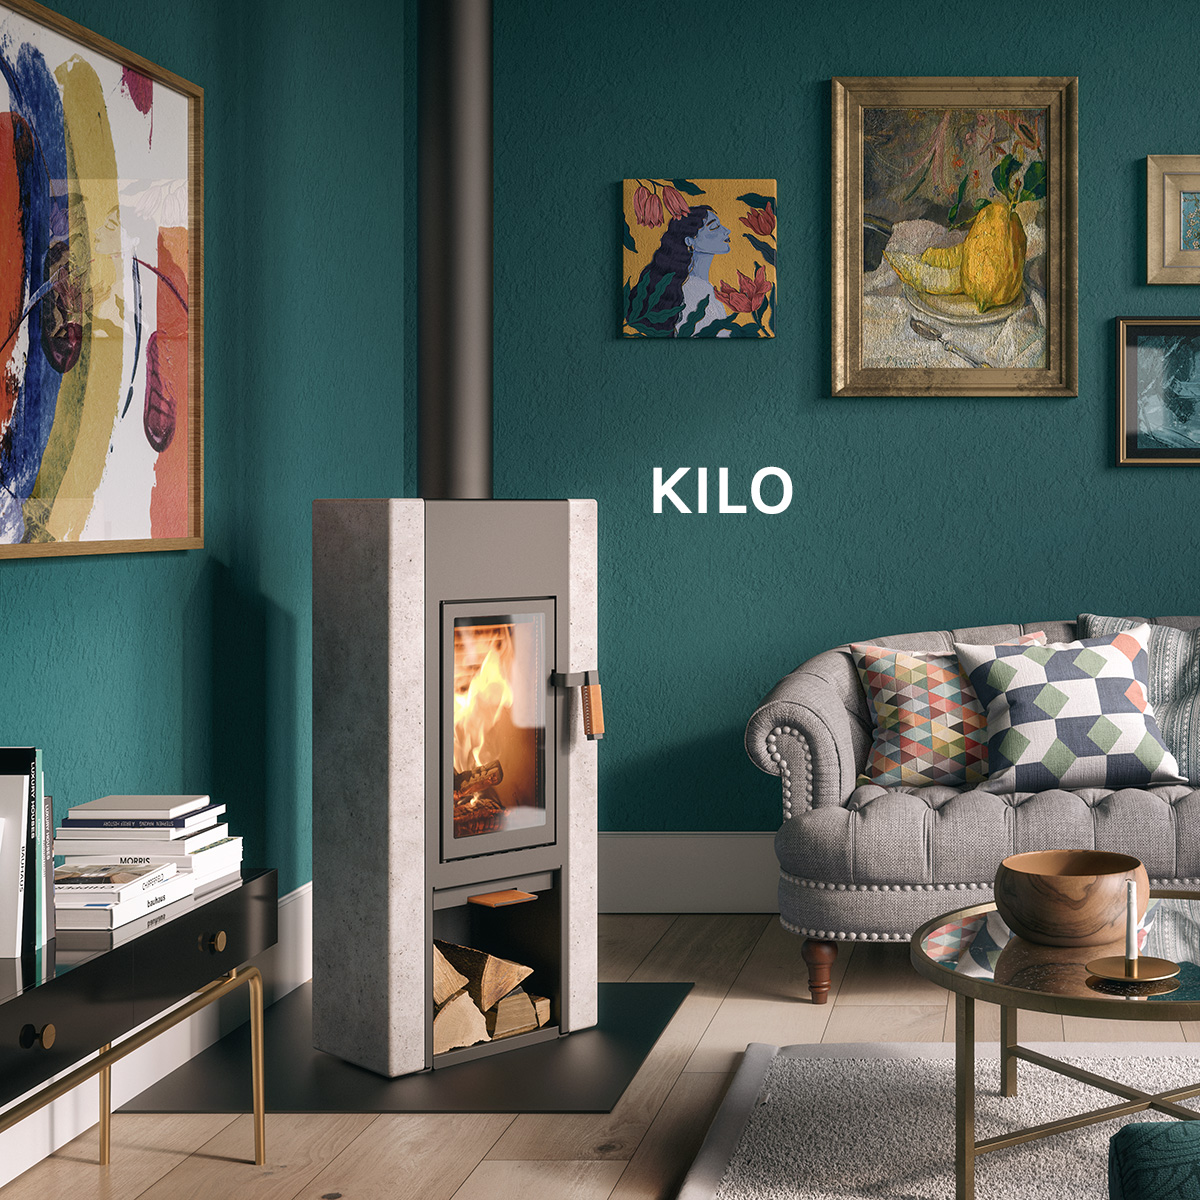 KILO/1200x1200-Kilo-LR.jpg